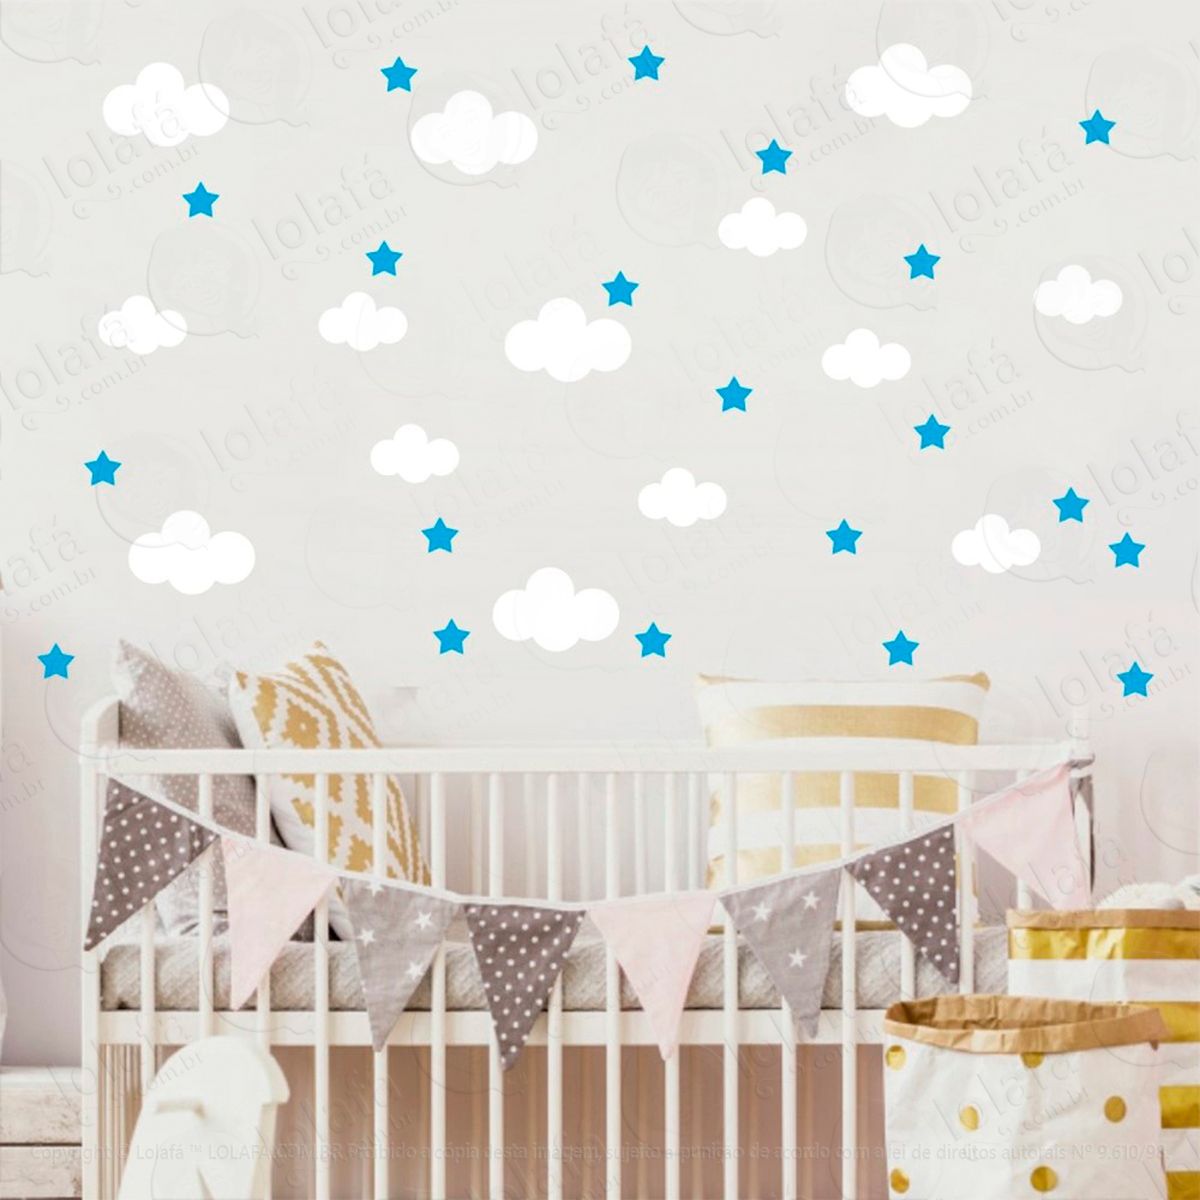 adesivos nuvens e estrelas 104 peças adesivos para quarto de bebê infantil - mod:824